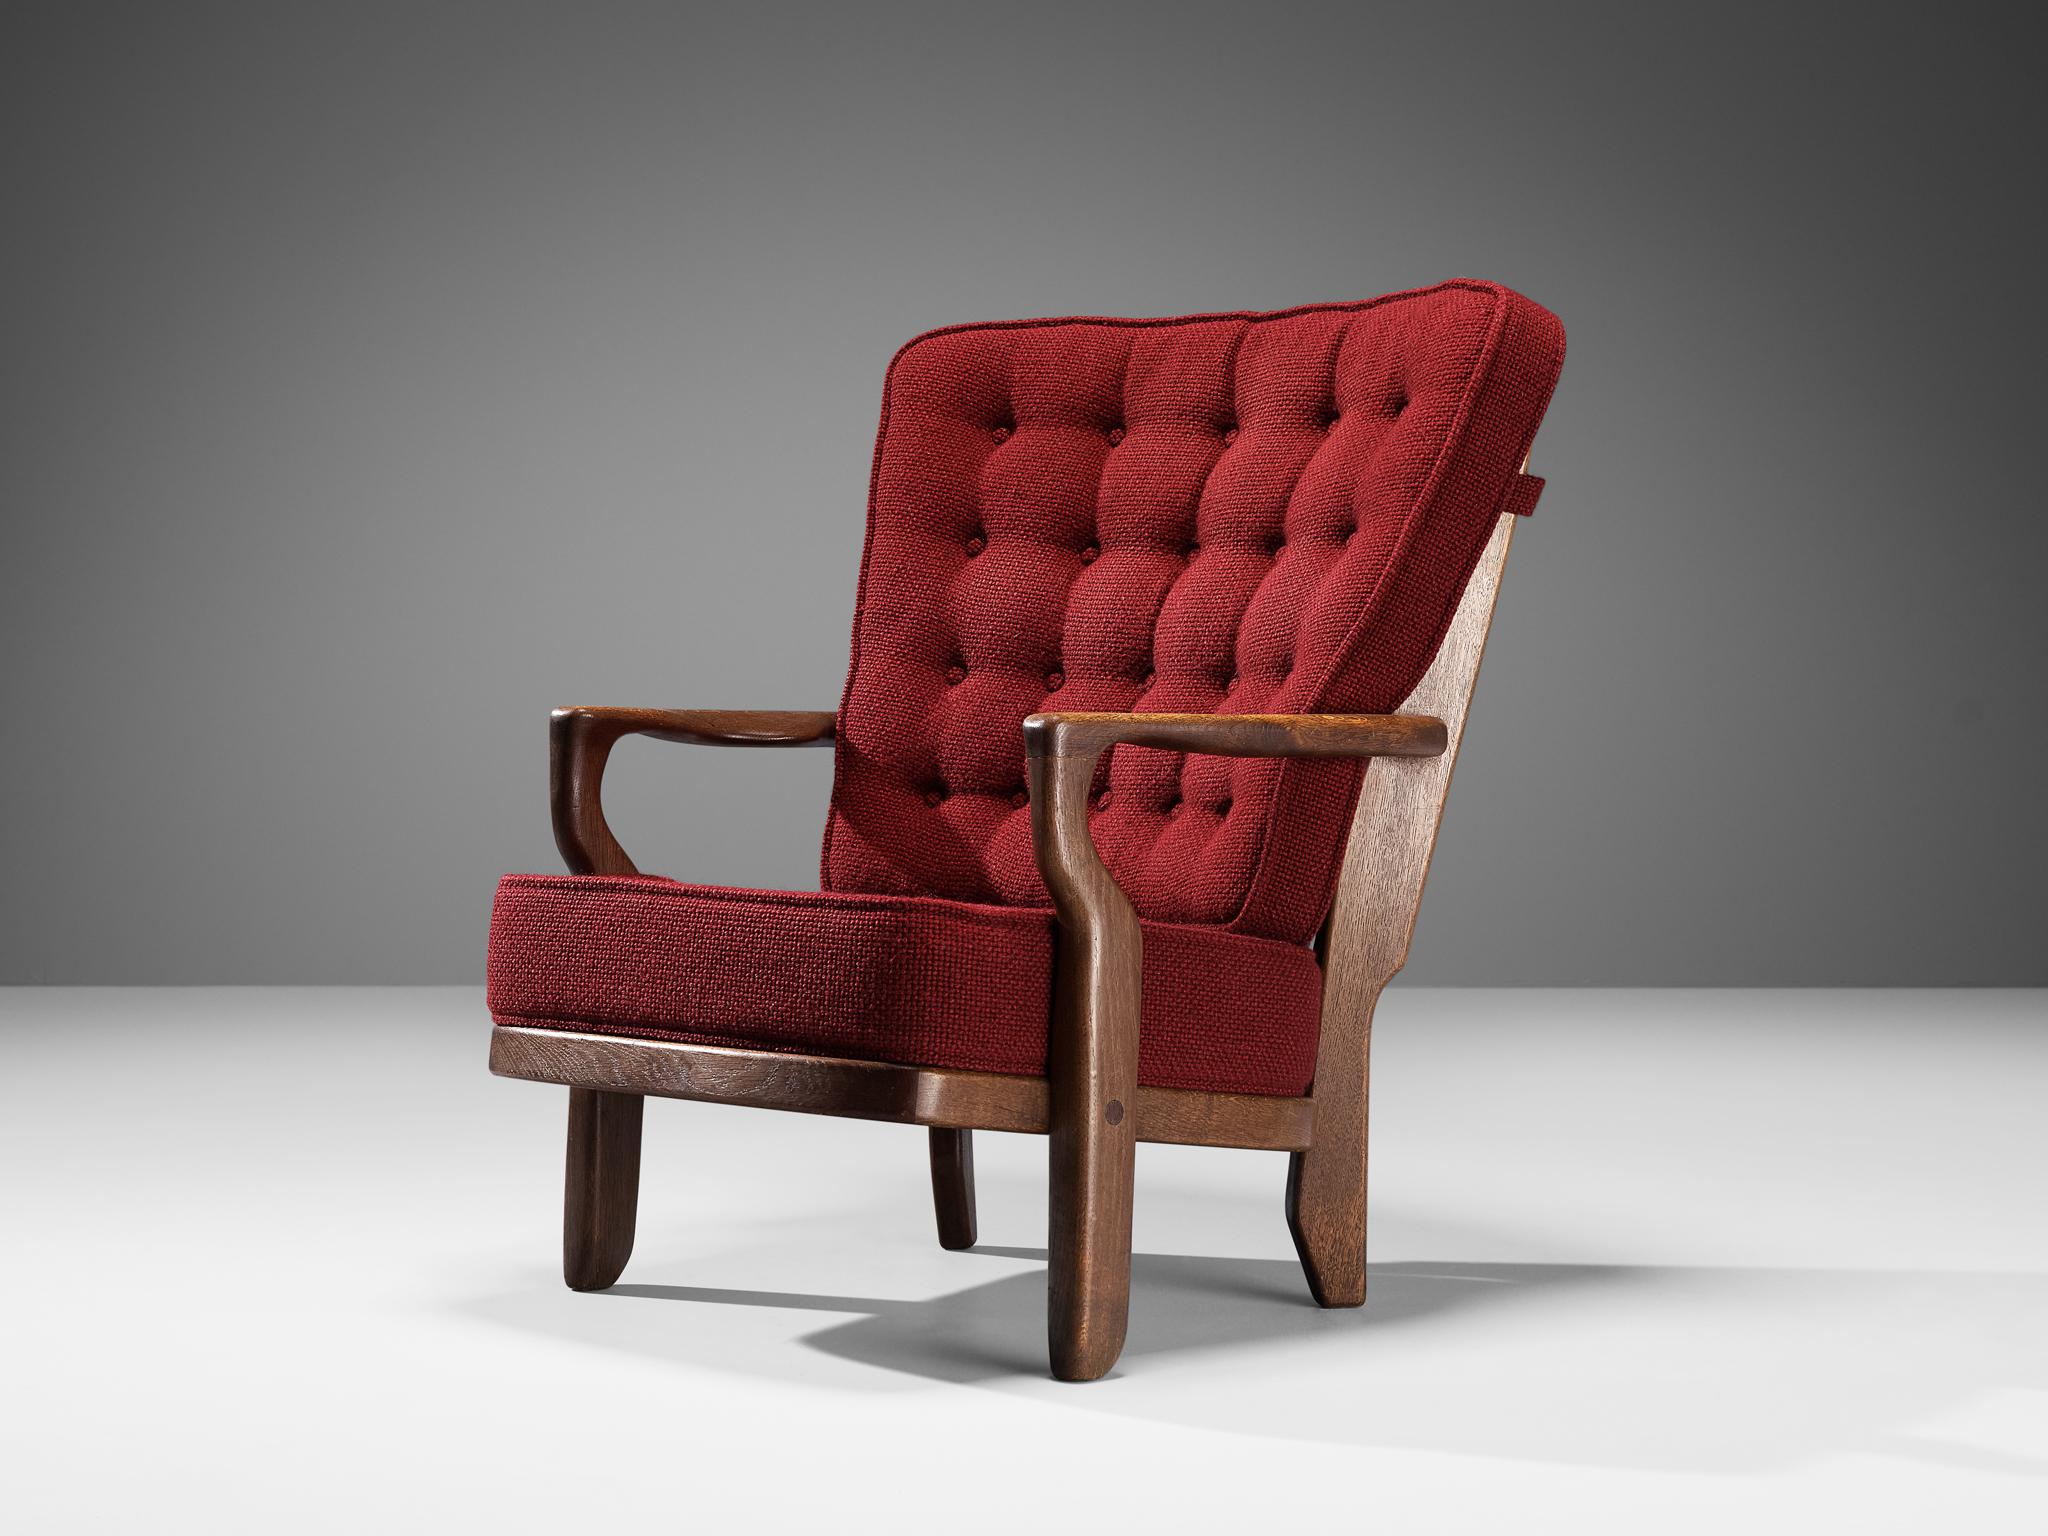 Guillerme & Chambron für Votre Maison, Sessel Modell 'Mid Repos', Eiche, Wolle, Frankreich, 1960er Jahre

Guillerme und Chambron sind bekannt für ihre hochwertigen, massiven Eichenmöbel, von denen dieses ein weiteres gutes Beispiel ist. Dieser Stuhl